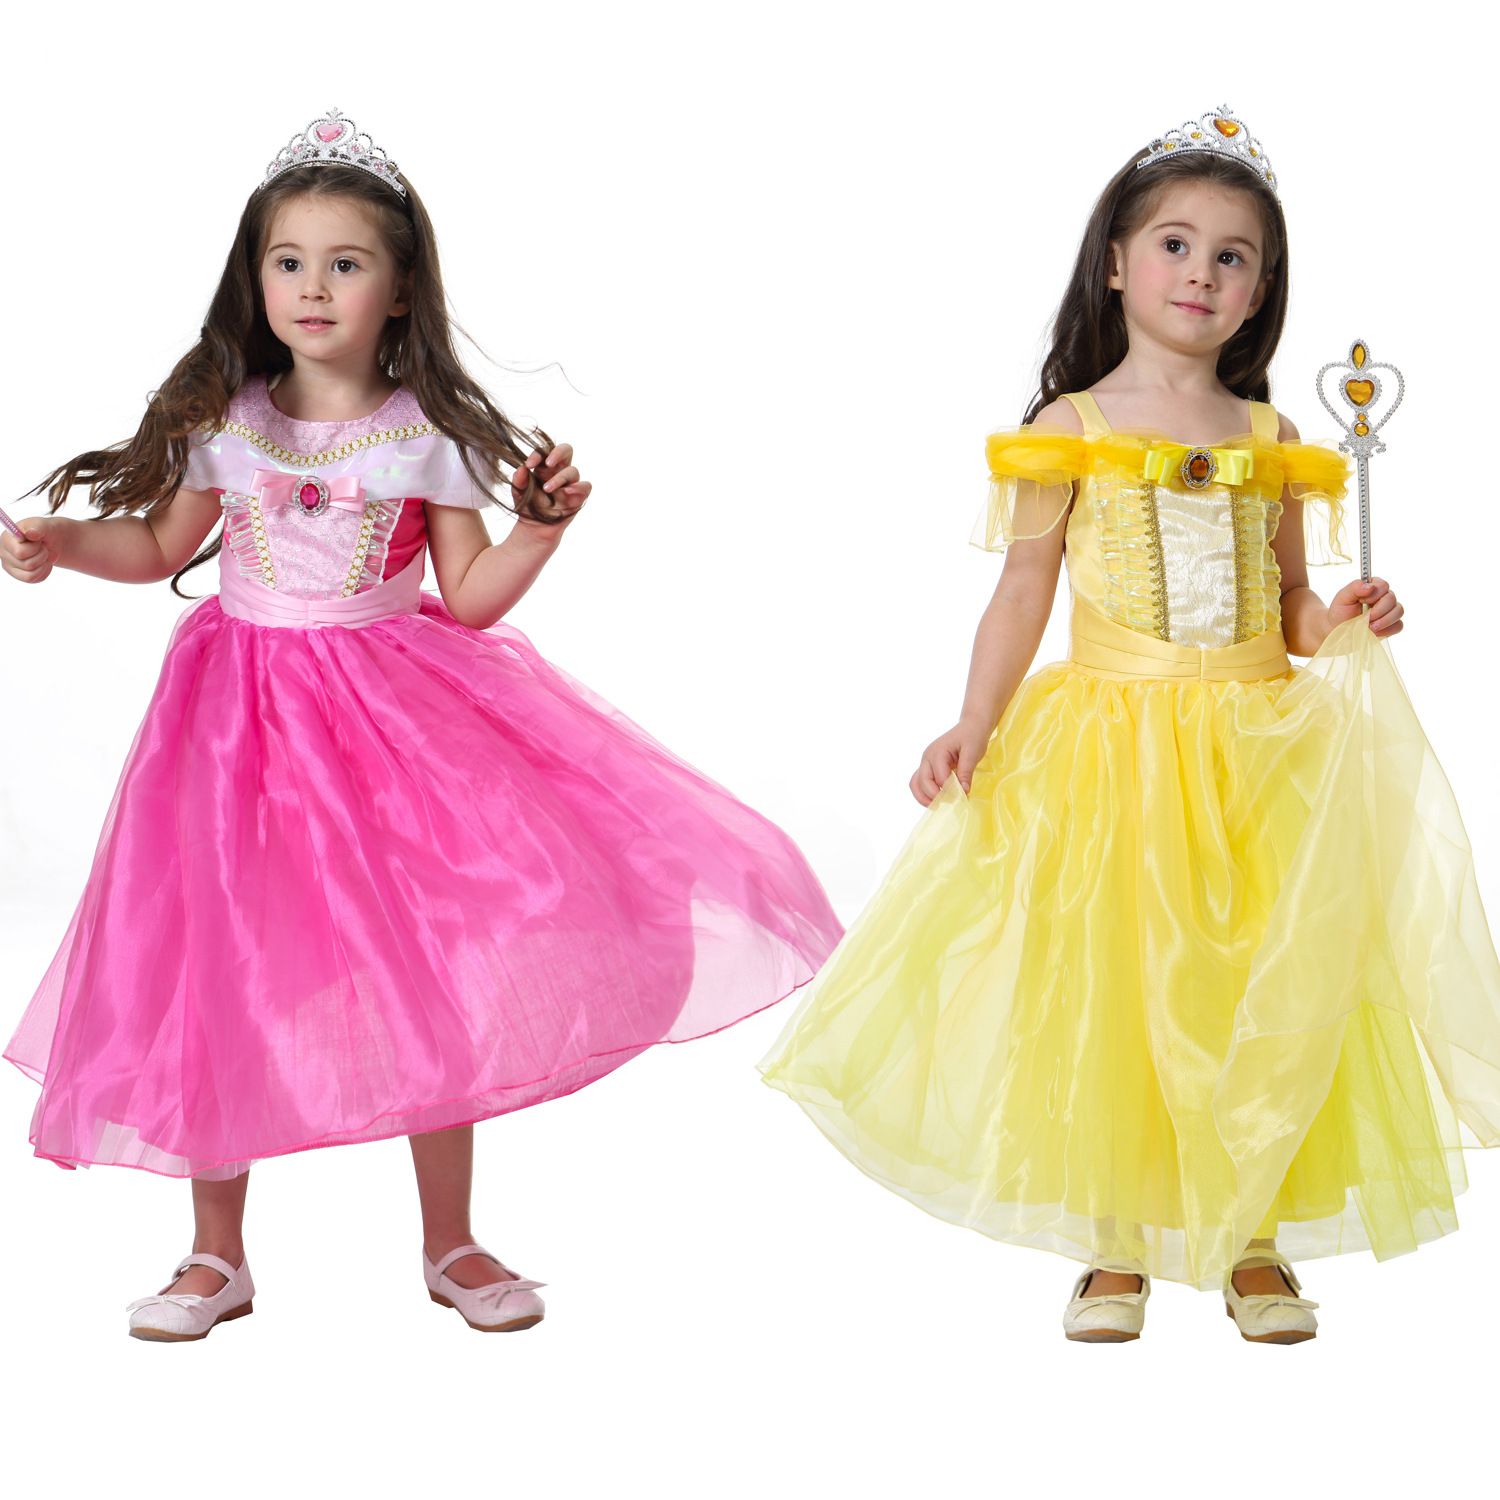 childrens yellow dress